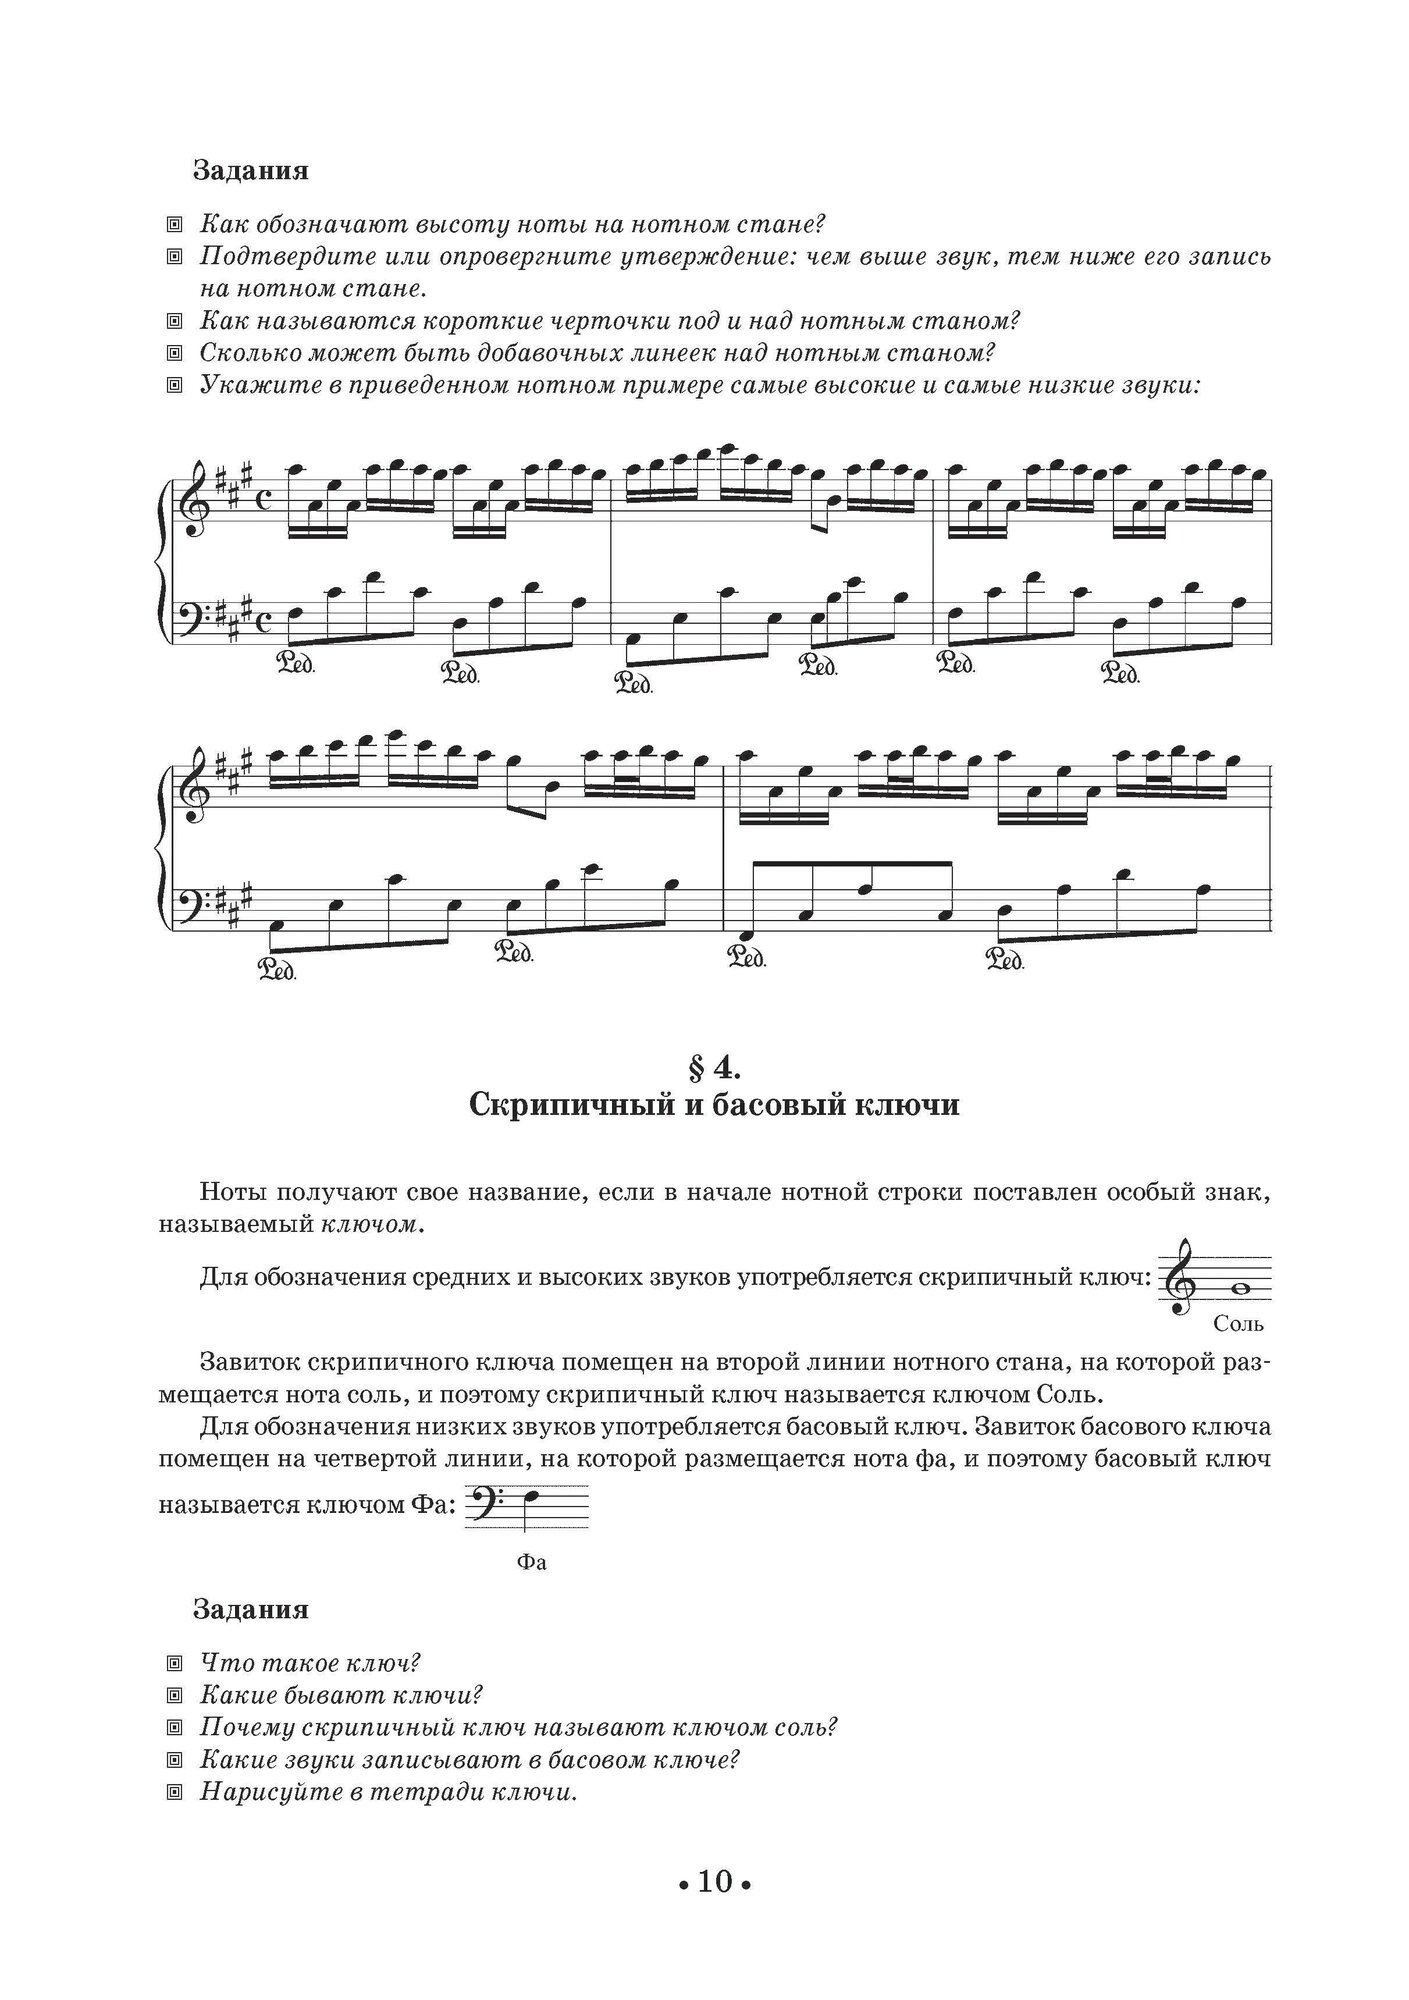 Теория музыки. Учебное пособие для хореографических учебных заведений - фото №2